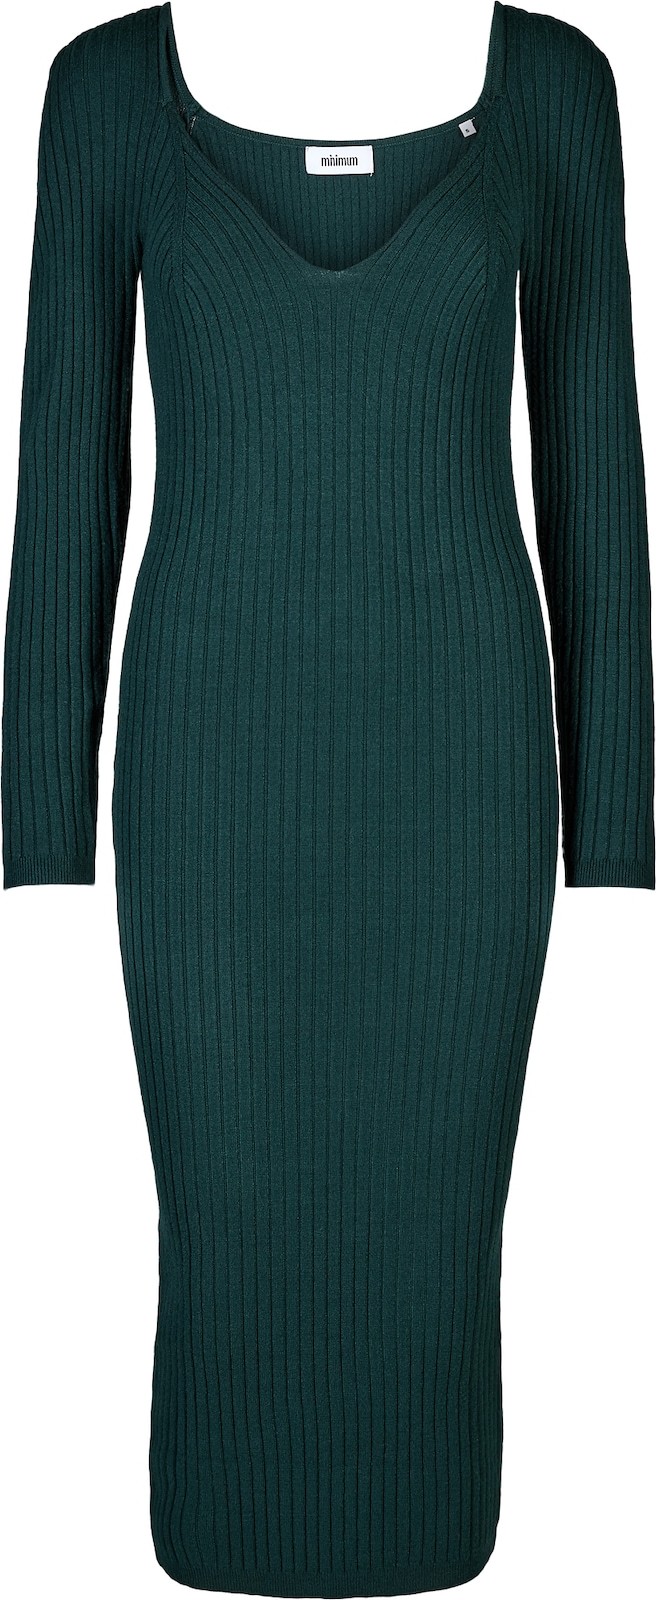 minimum Úpletové šaty 'Stassy' tmavě zelená